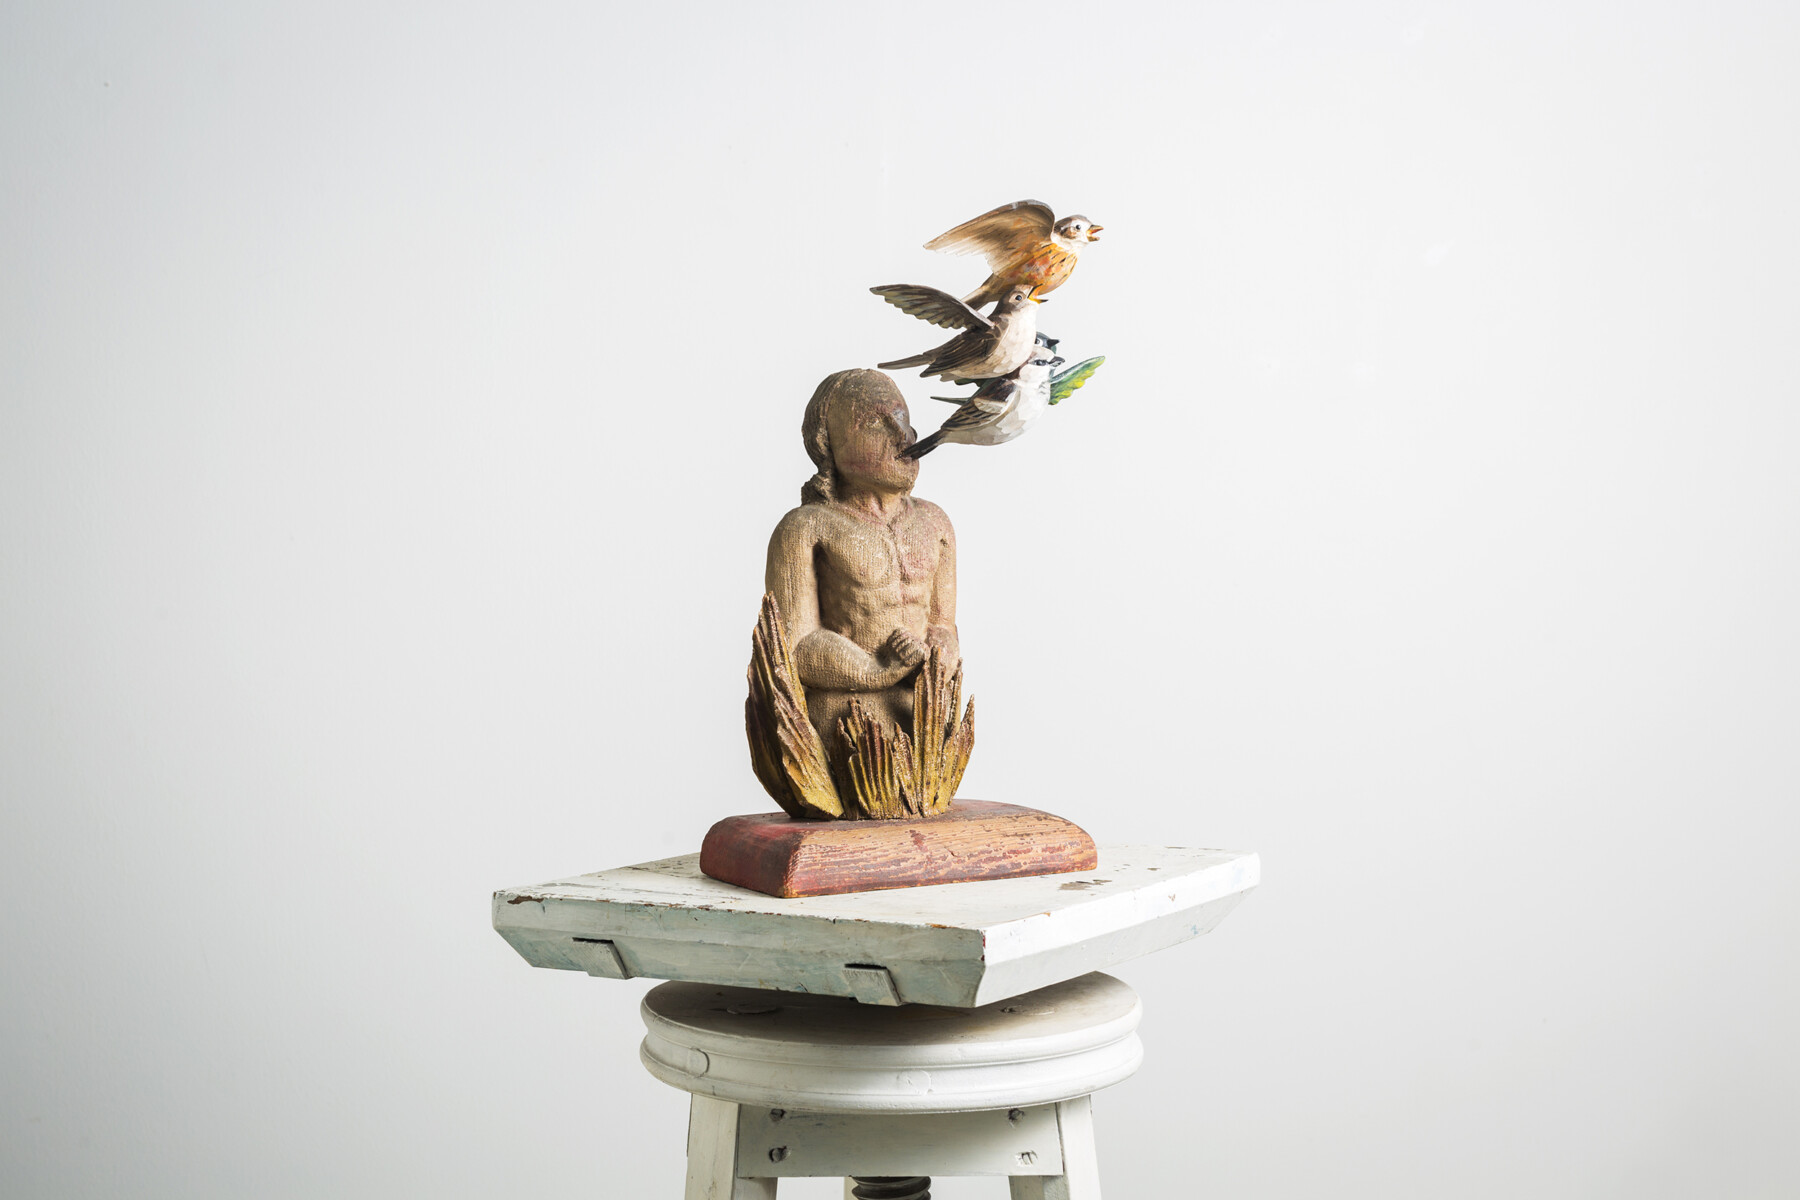 Une sculpture posée sur un piédestal représente un personnage entouré de plusieurs oiseaux colorés voletant autour de sa tête ou qui donnent même l’impression d’être tout juste sortis de sa tête. 